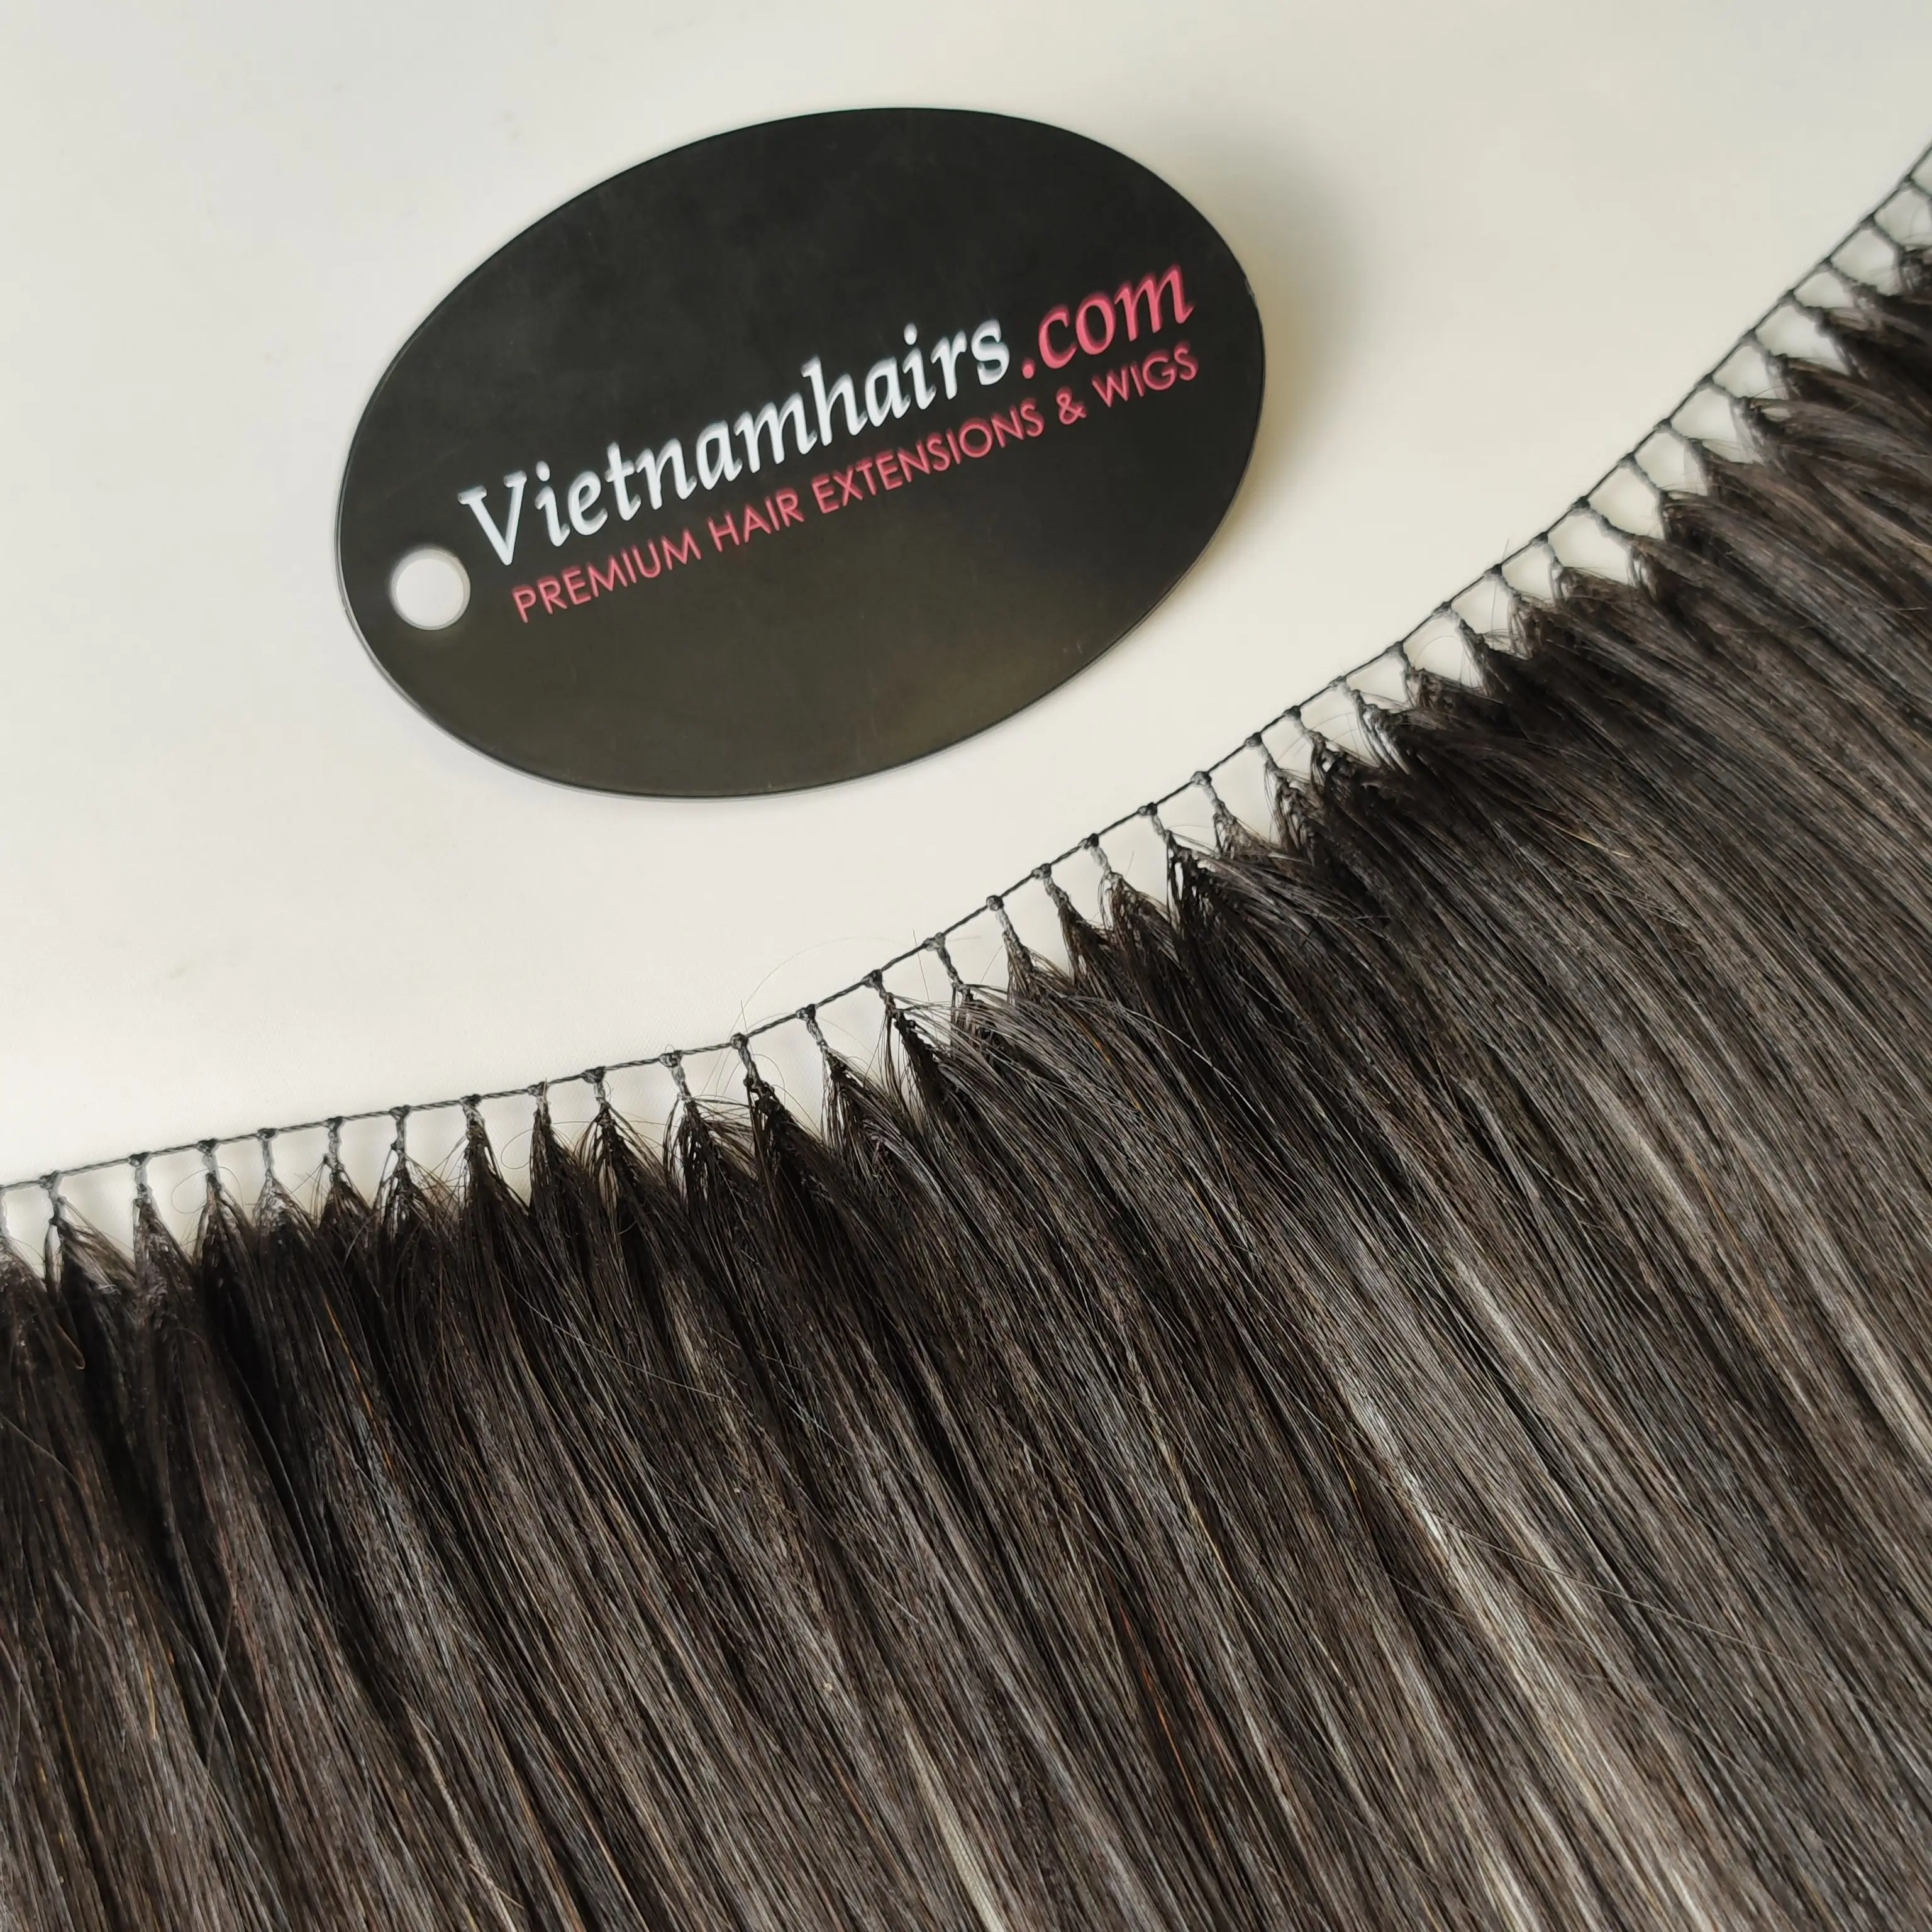 Top vendendo cabelo cru & trama cabelo vietnam 100% humano natural, aceitar vender amostra.